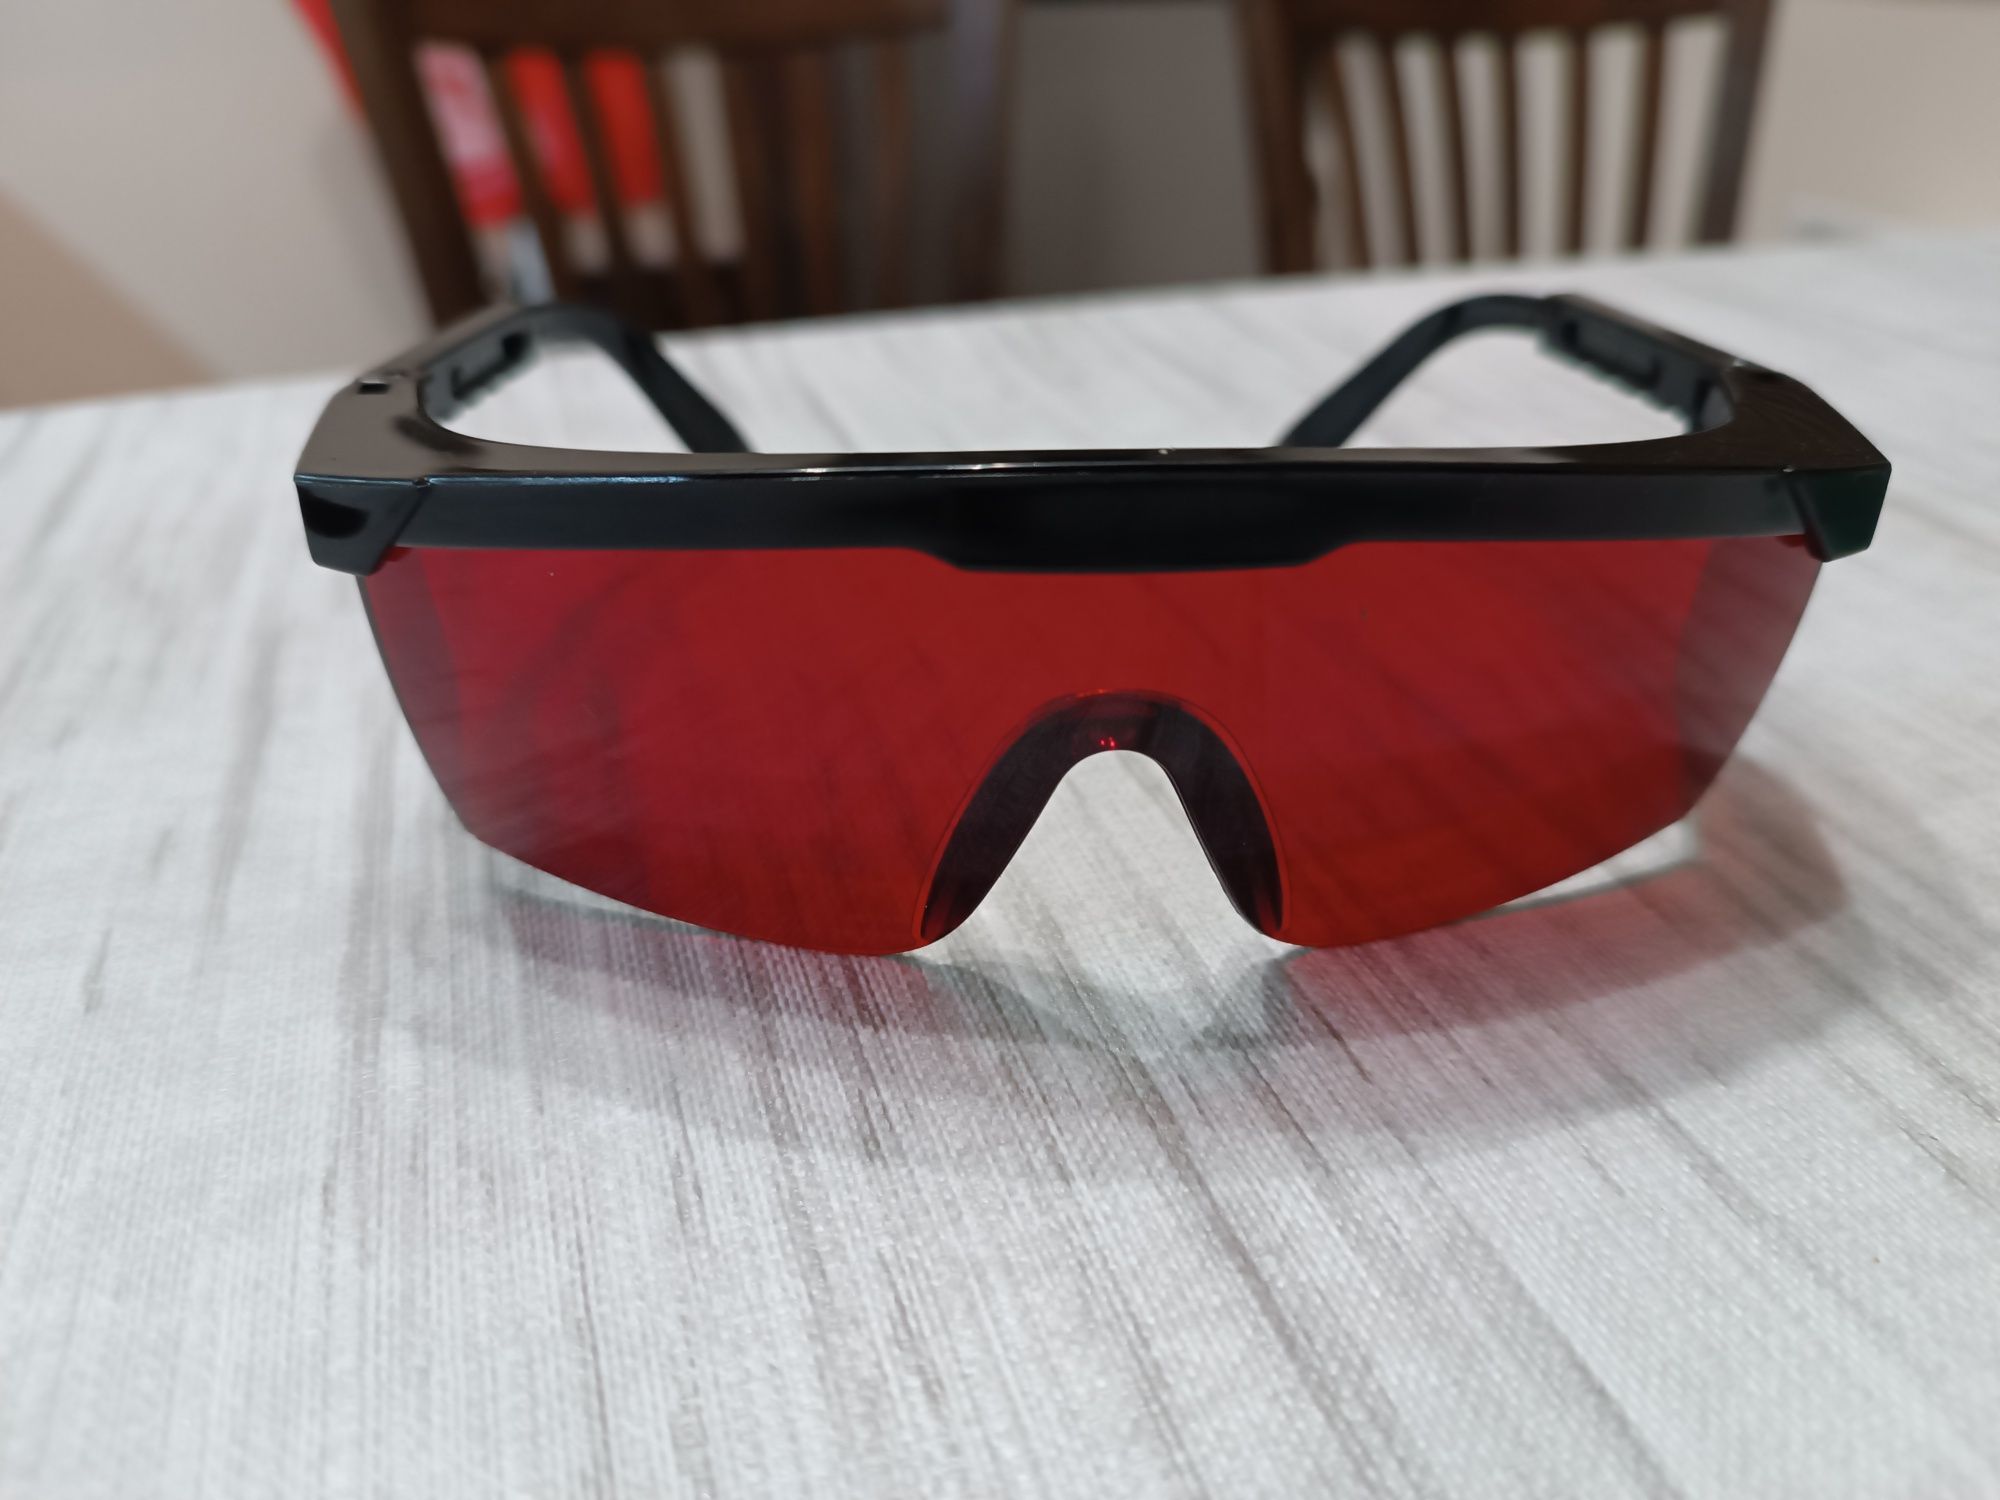 Очила за лазерен нивелир - червен/зелен цвят